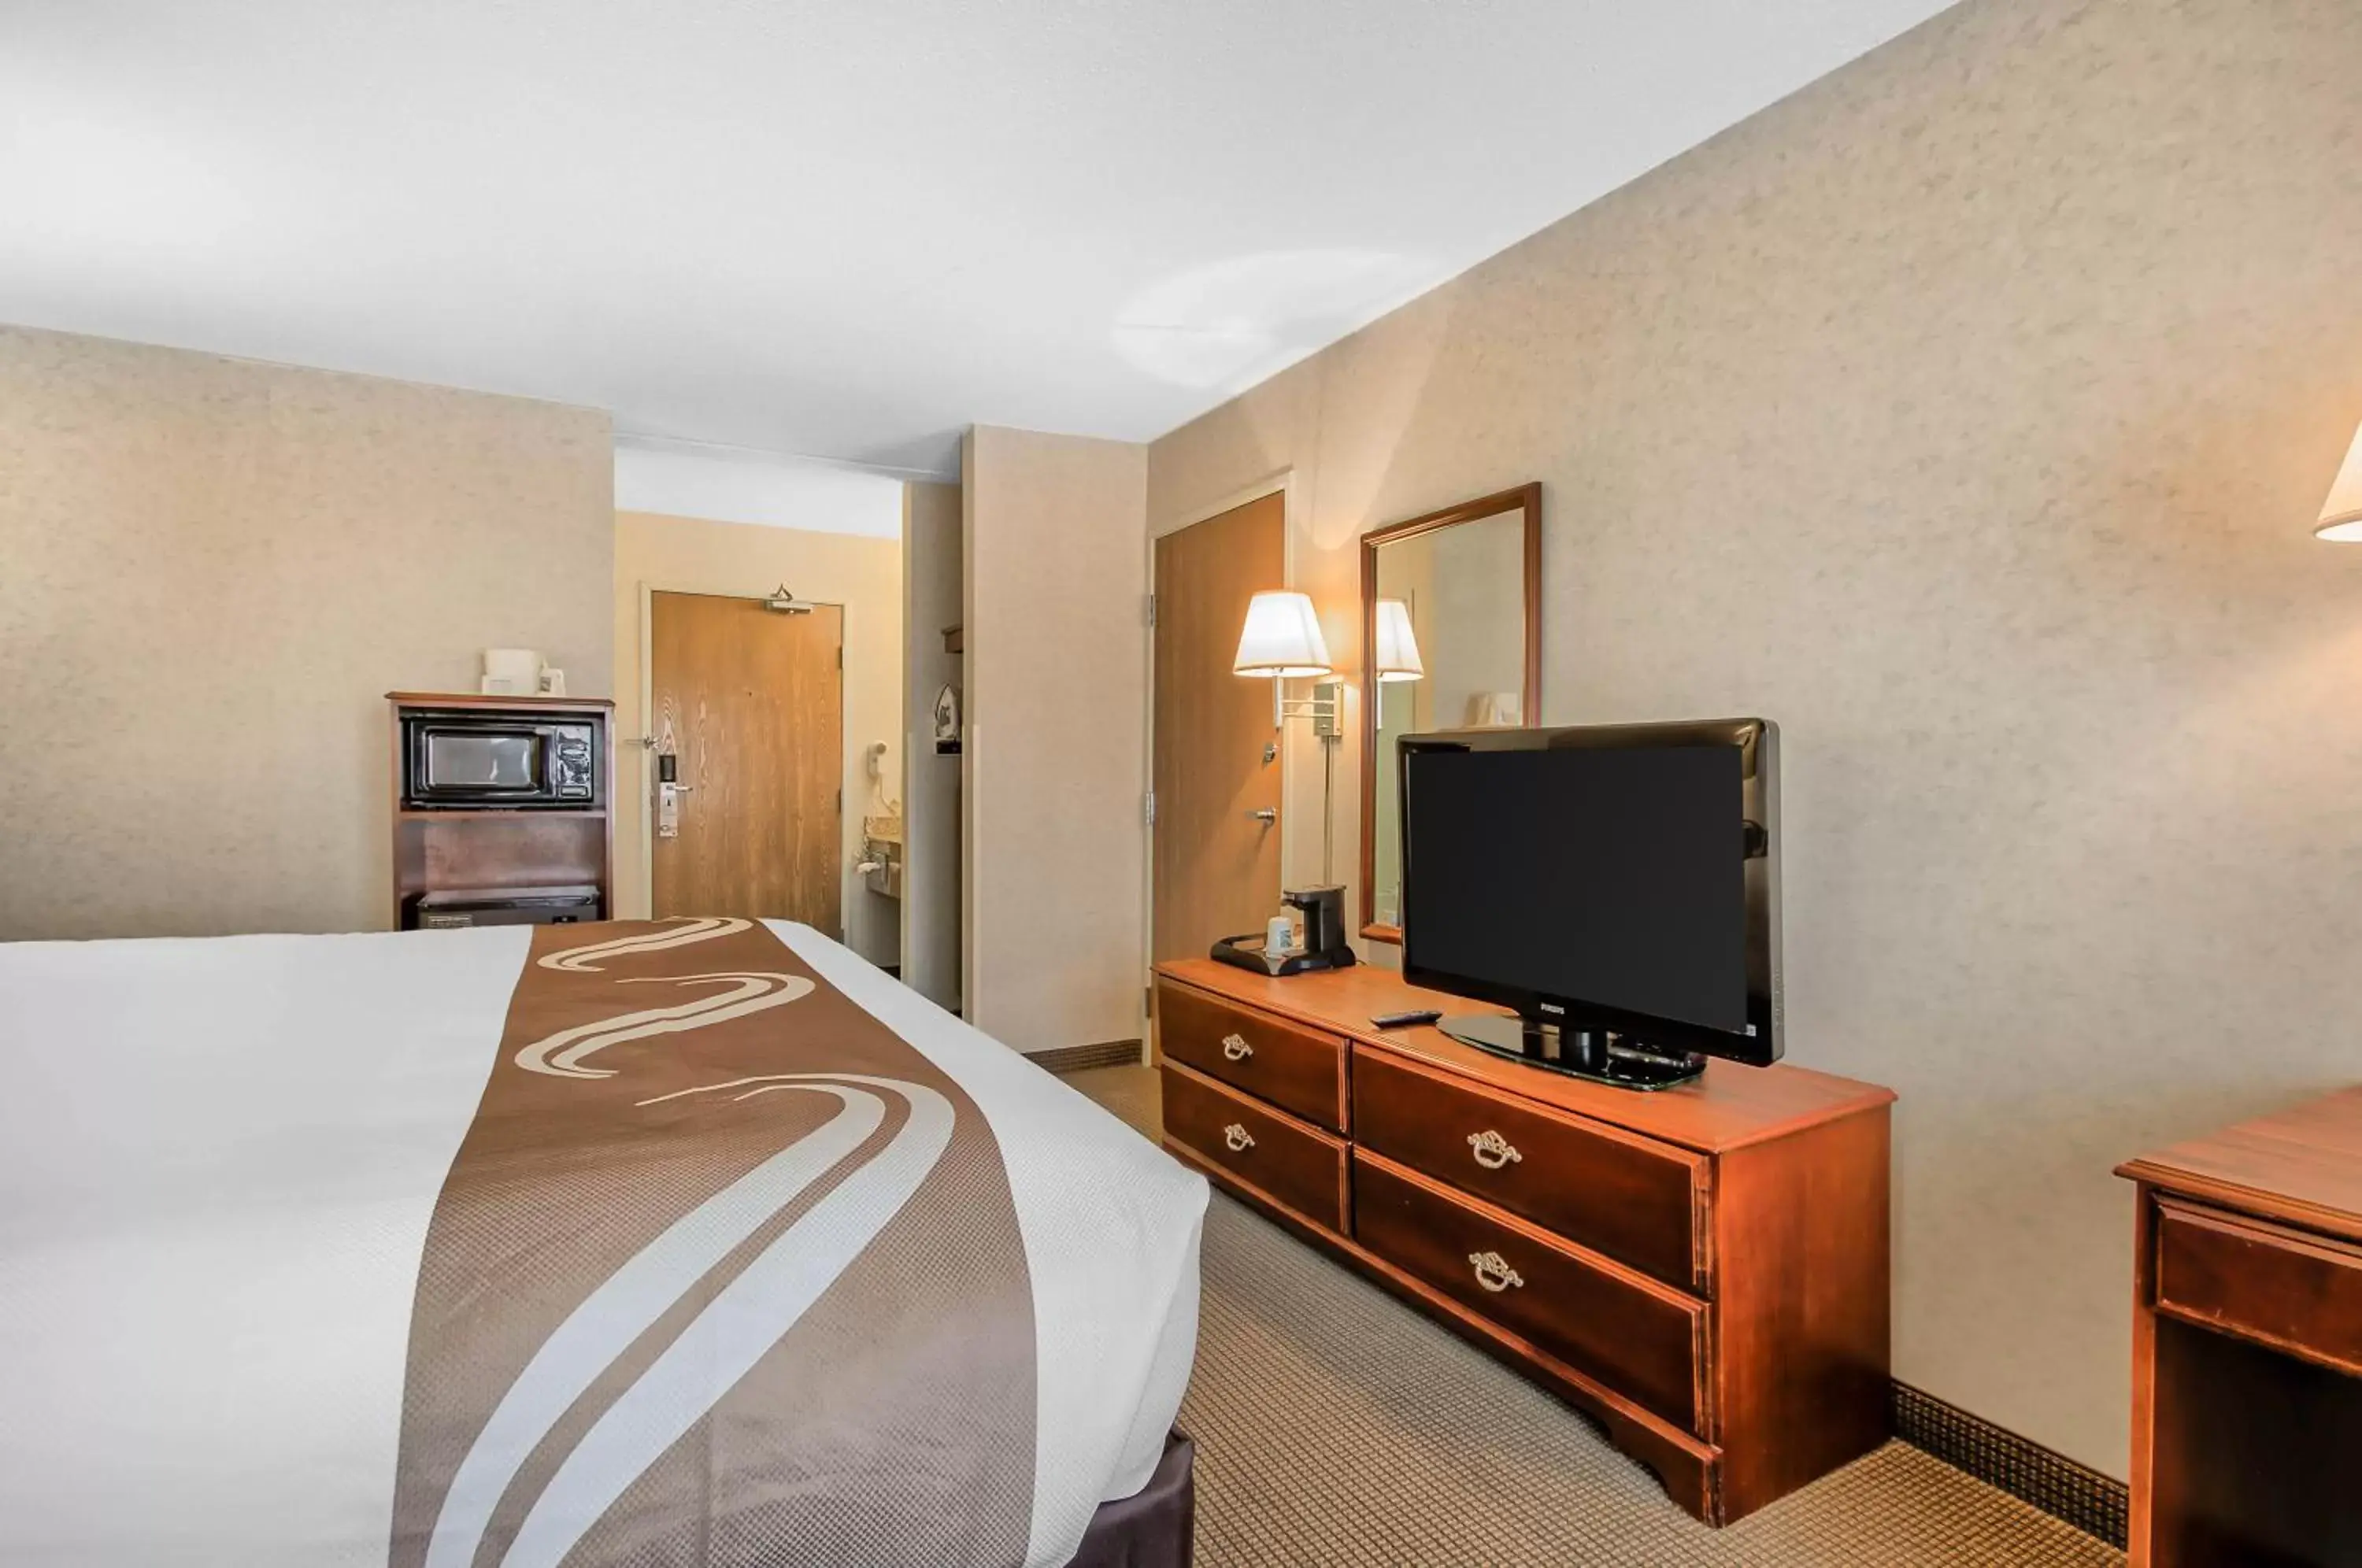 Bed in Comfort Inn & Suites